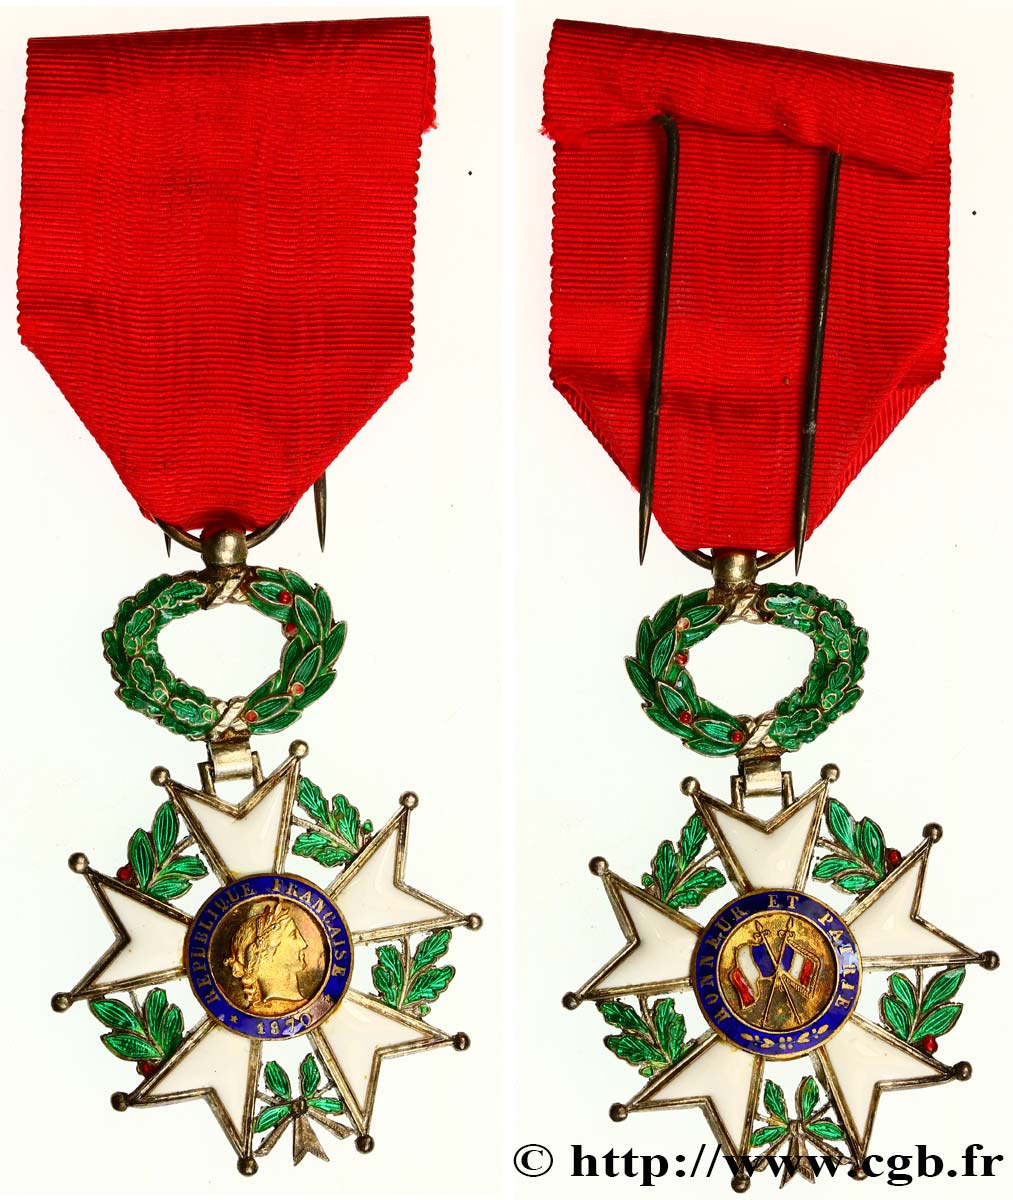 TERCERA REPUBLICA FRANCESA Légion d’Honneur - Chevalier MBC+